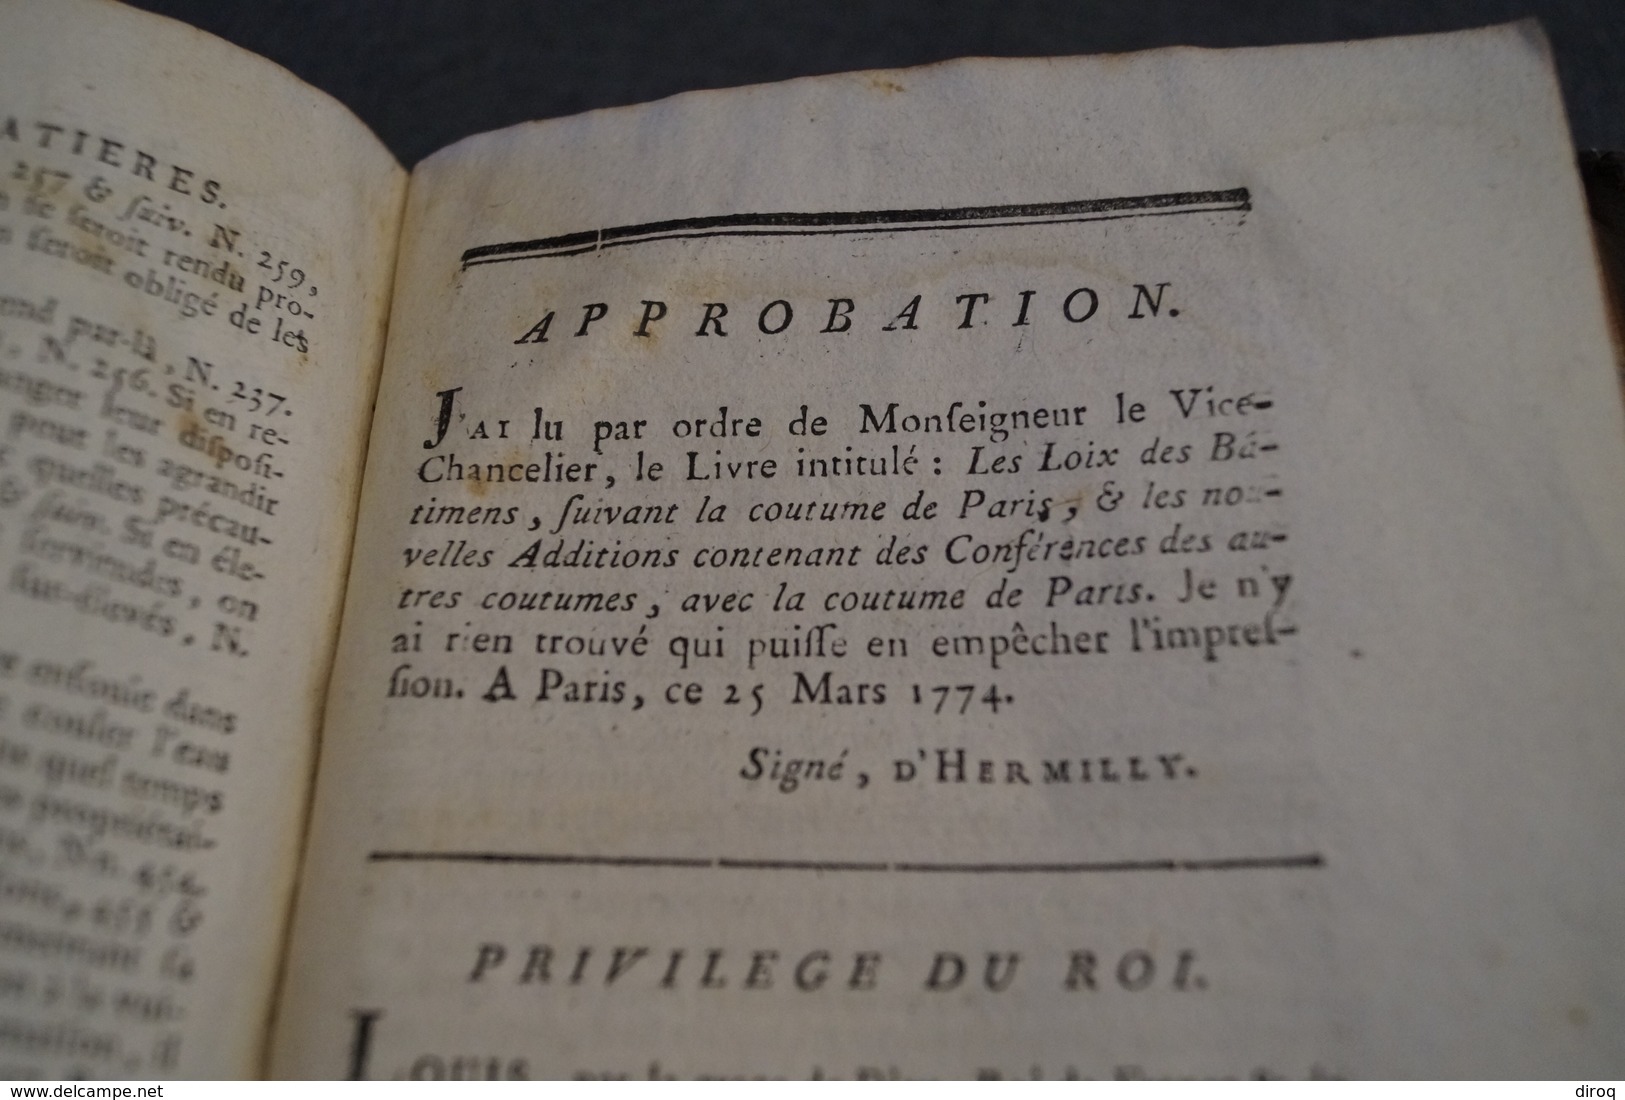 RARE,1787,Les loix des batiments suivant la coutume de Paris,700 pages,20,5 Cm. sur 13,5 Cm.